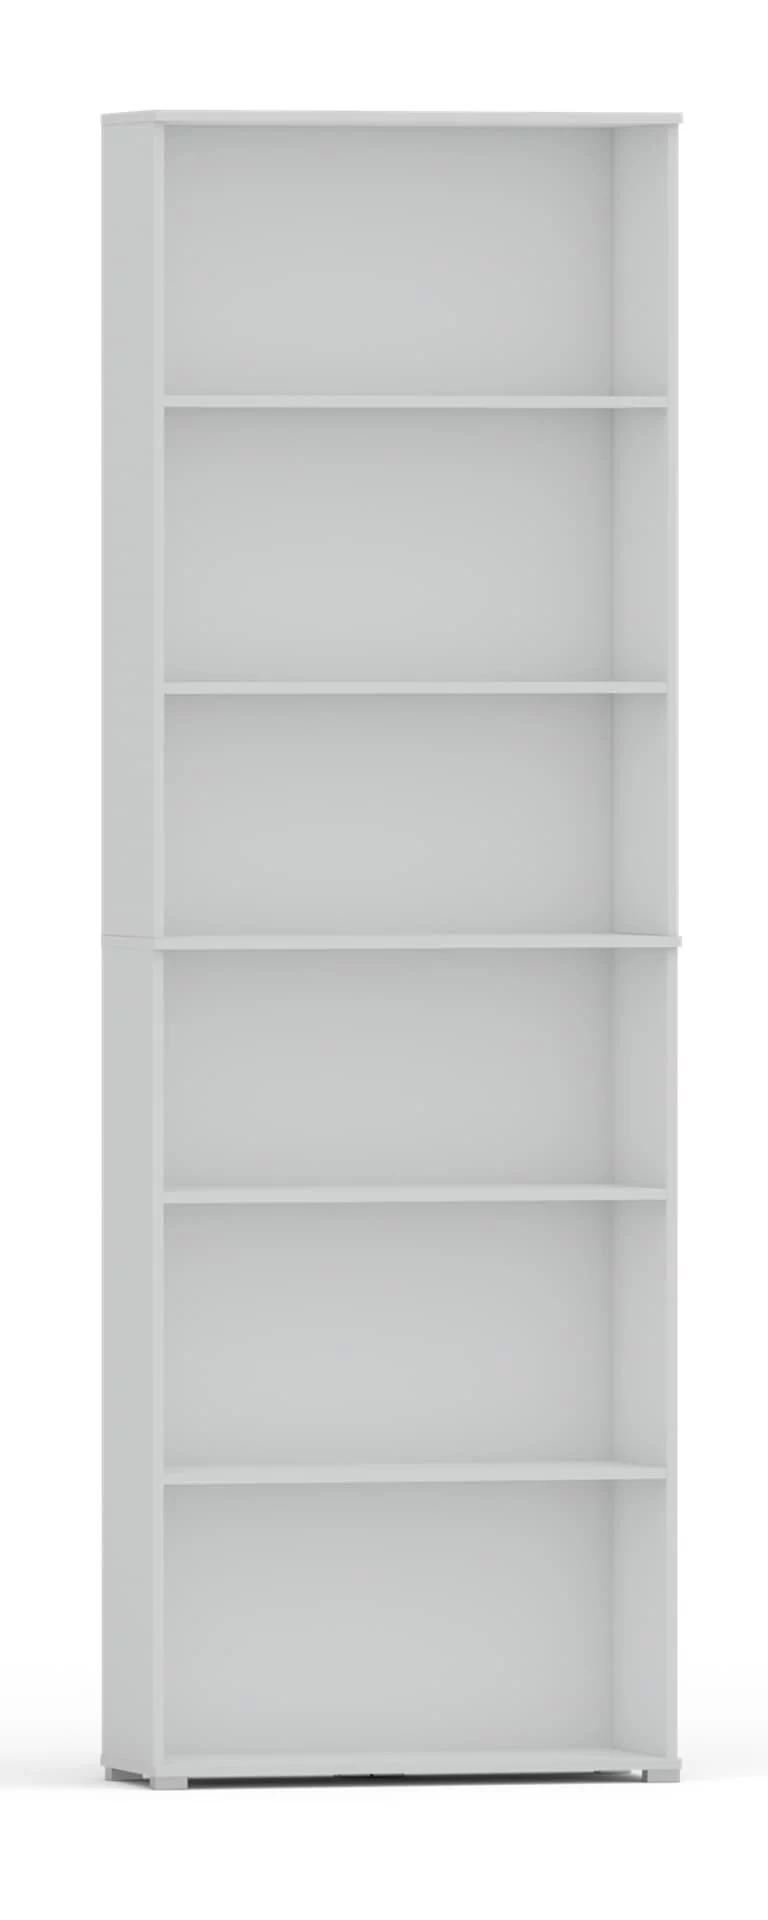 Regał pola 215x80 cm biały, 6 półek na książki i segregatory